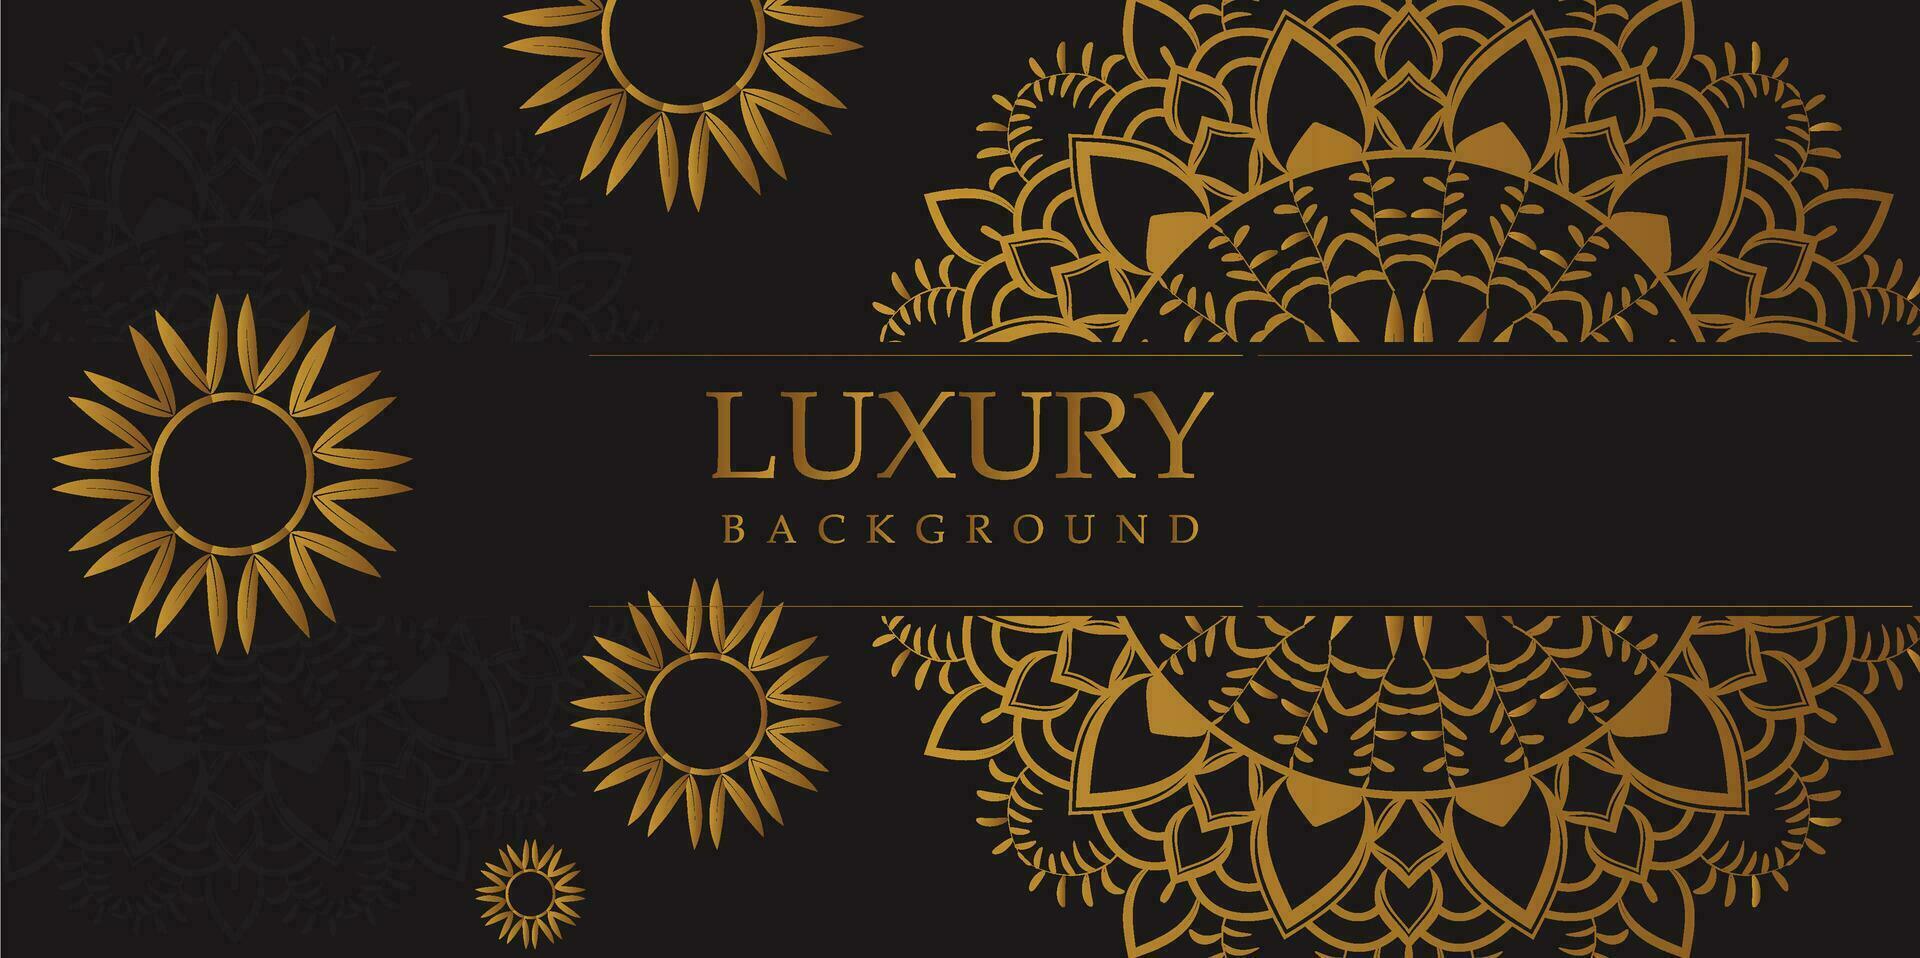 Luxury Mandala Background with Golden Arabesque Pattern - Eastern Style Decorative Mandala vector